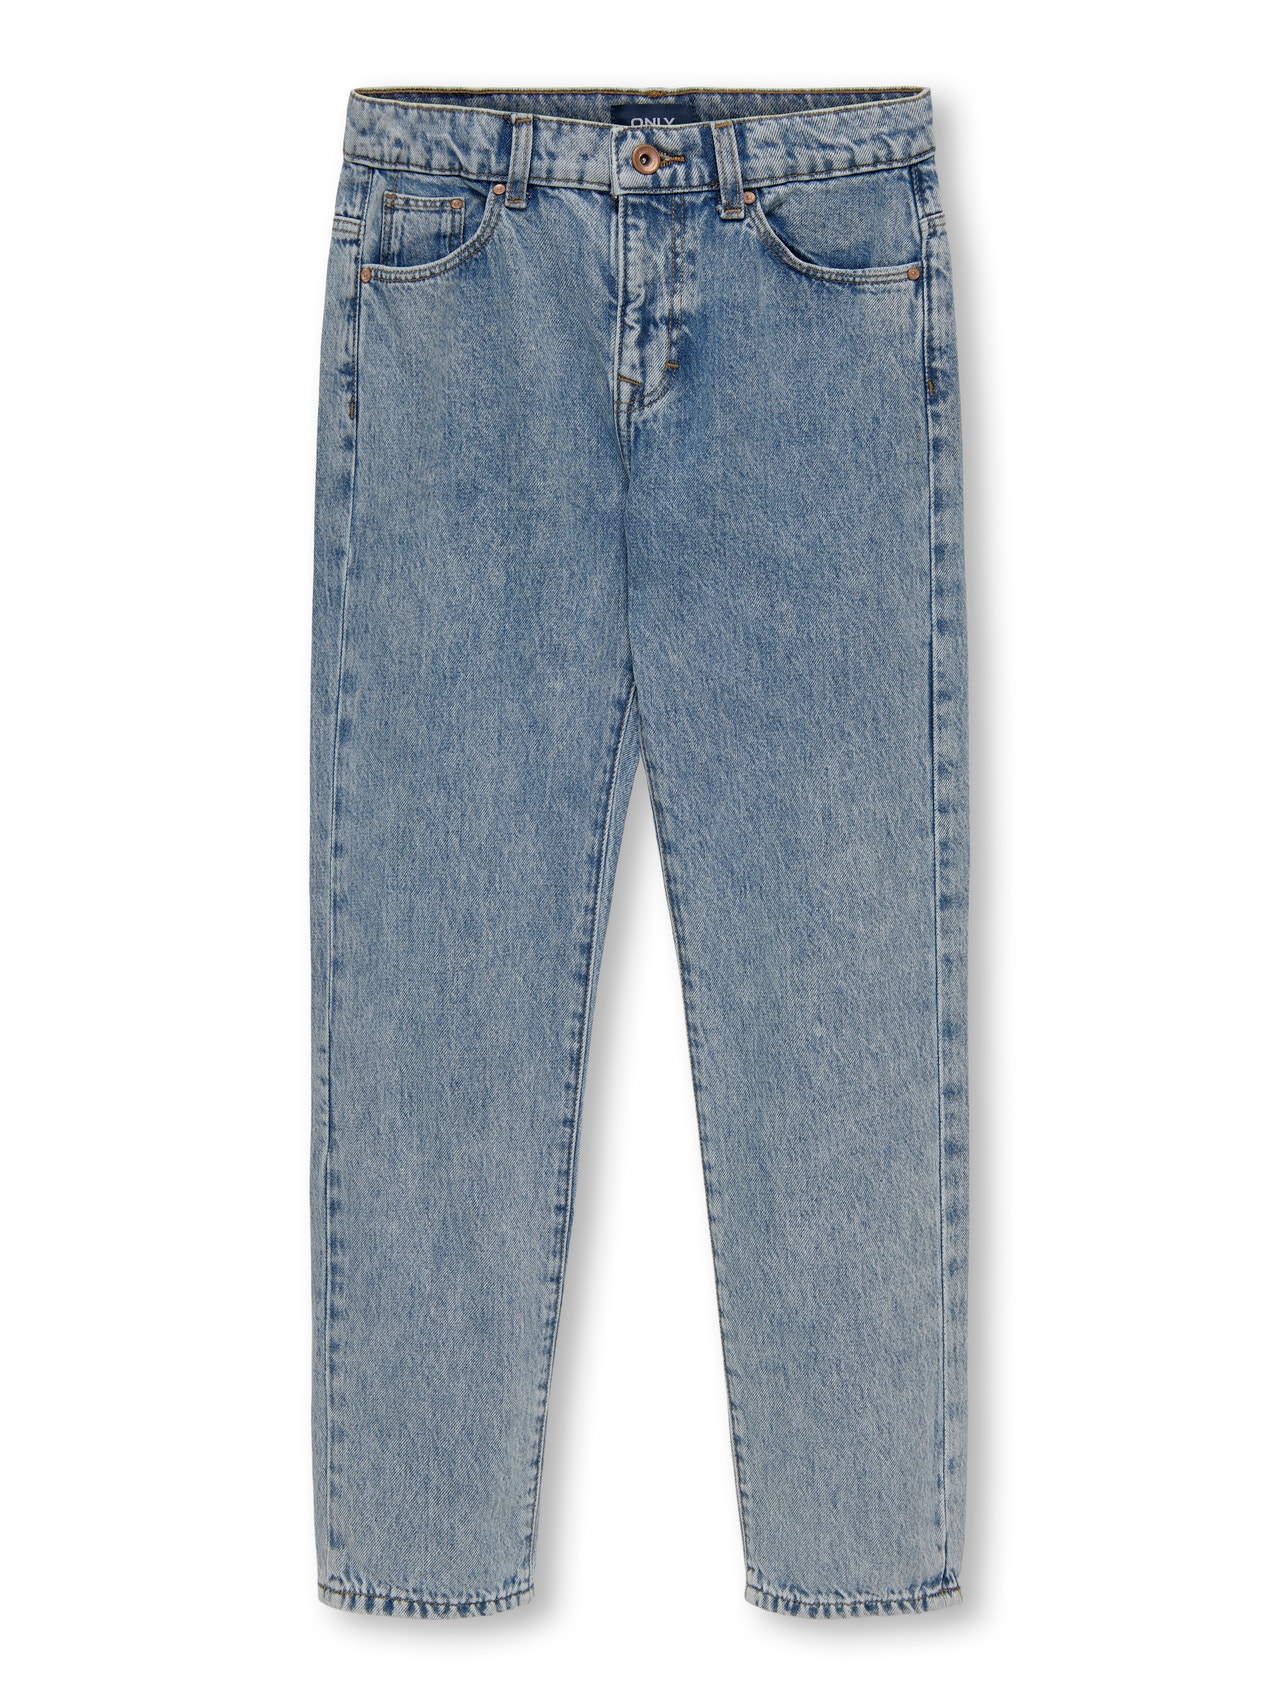 ONLY Loose Fit Jeans -Light Blue Denim - 15265530